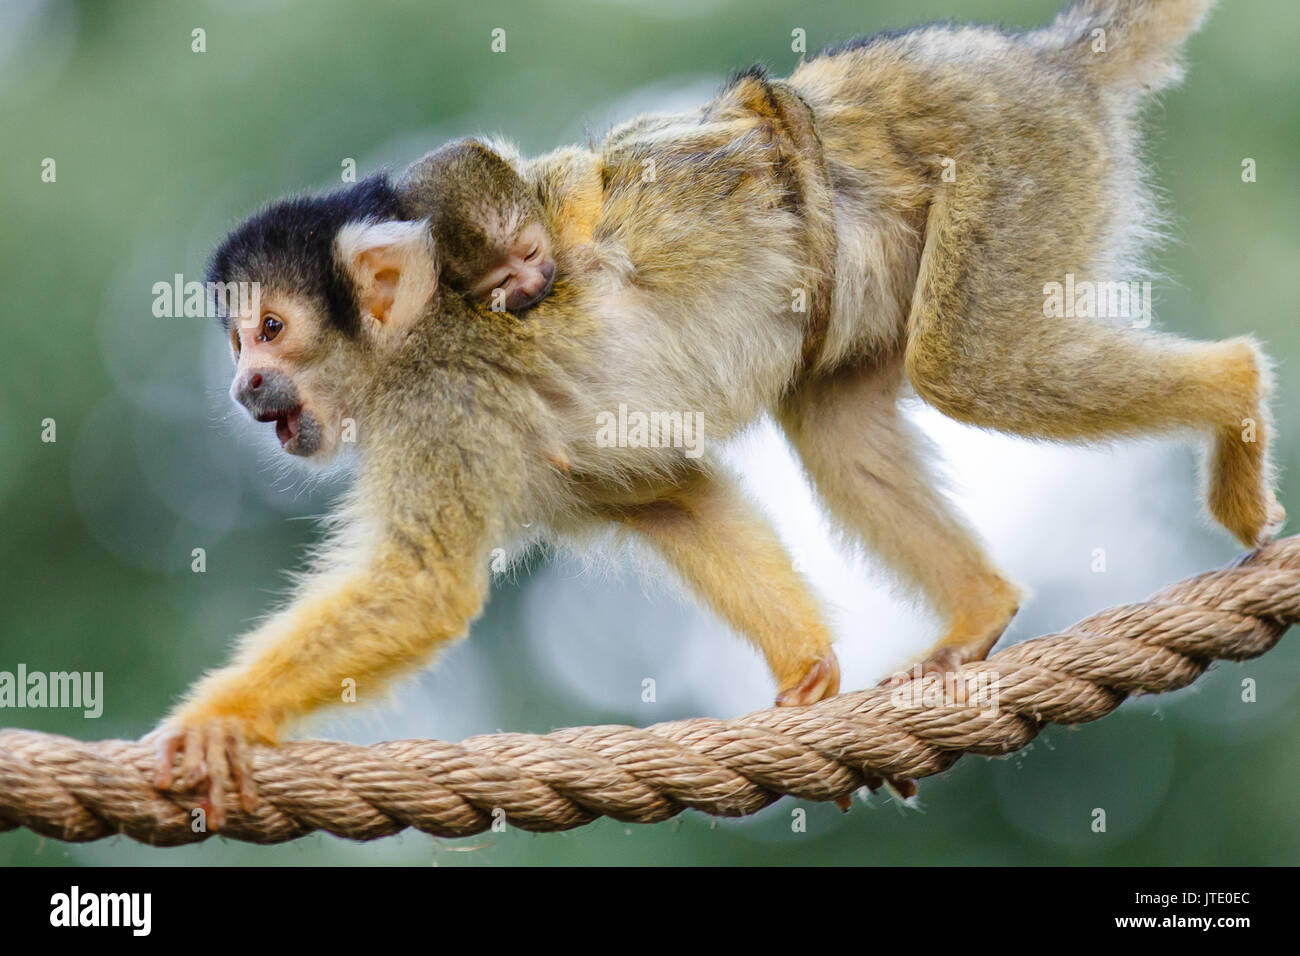 6 Tag alt bolivianischen Black-capped Squirrel monkey baby klammert sich fest an der Mütter zurück, seine winzigen Schwanz runden Ihr mittlerer Verpackung Stockfoto